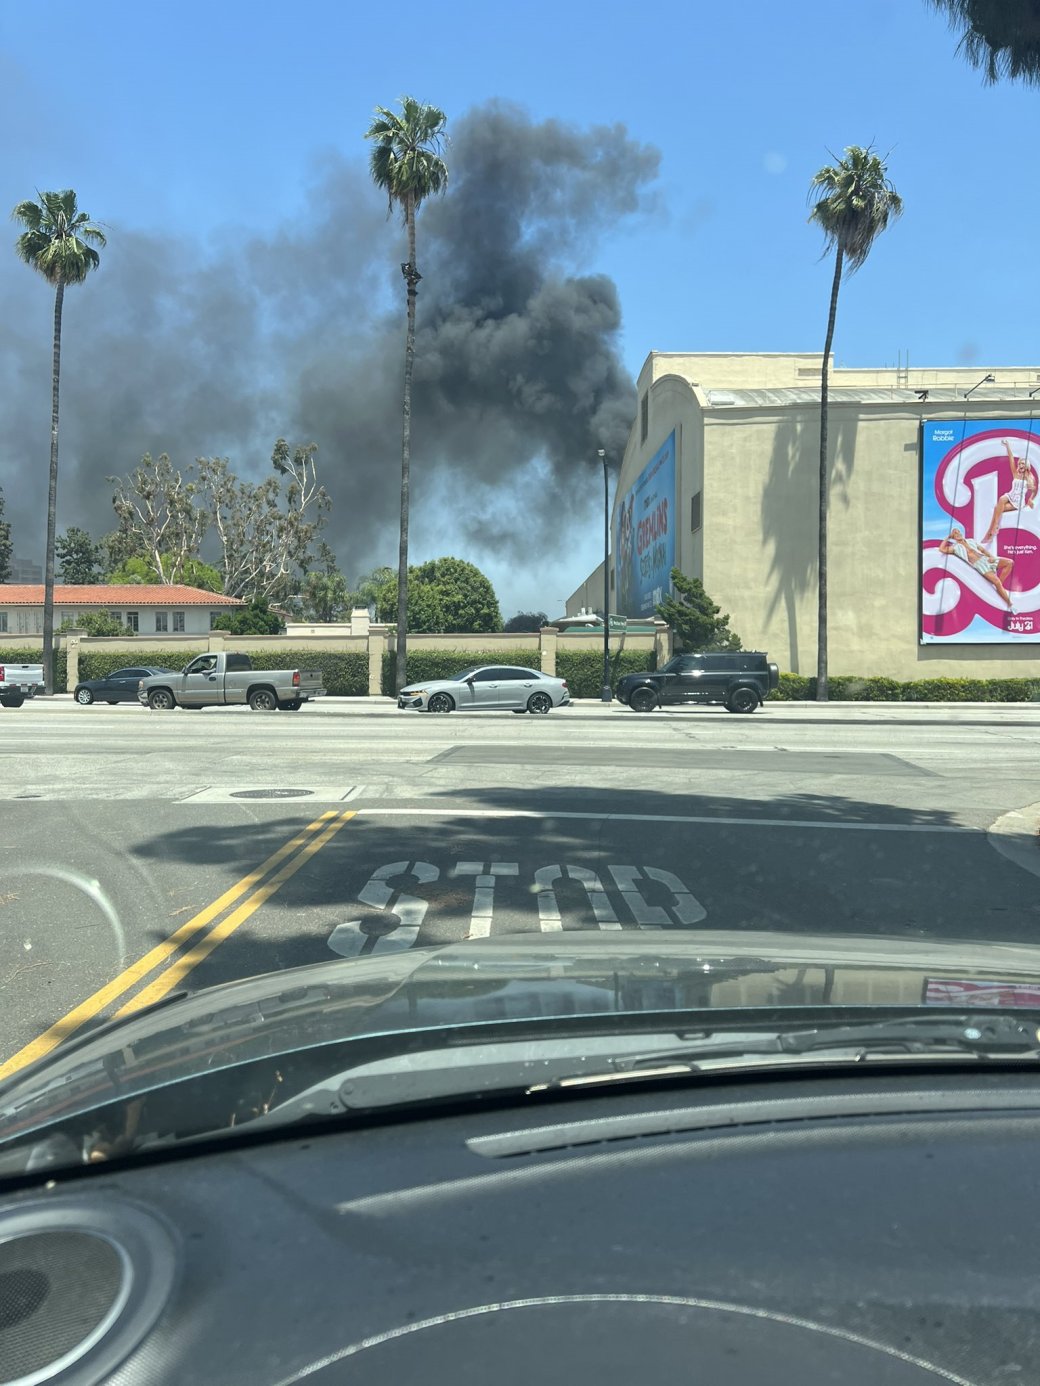 Галерея В здании Warner Bros в Калифорнии случился пожар - 3 фото